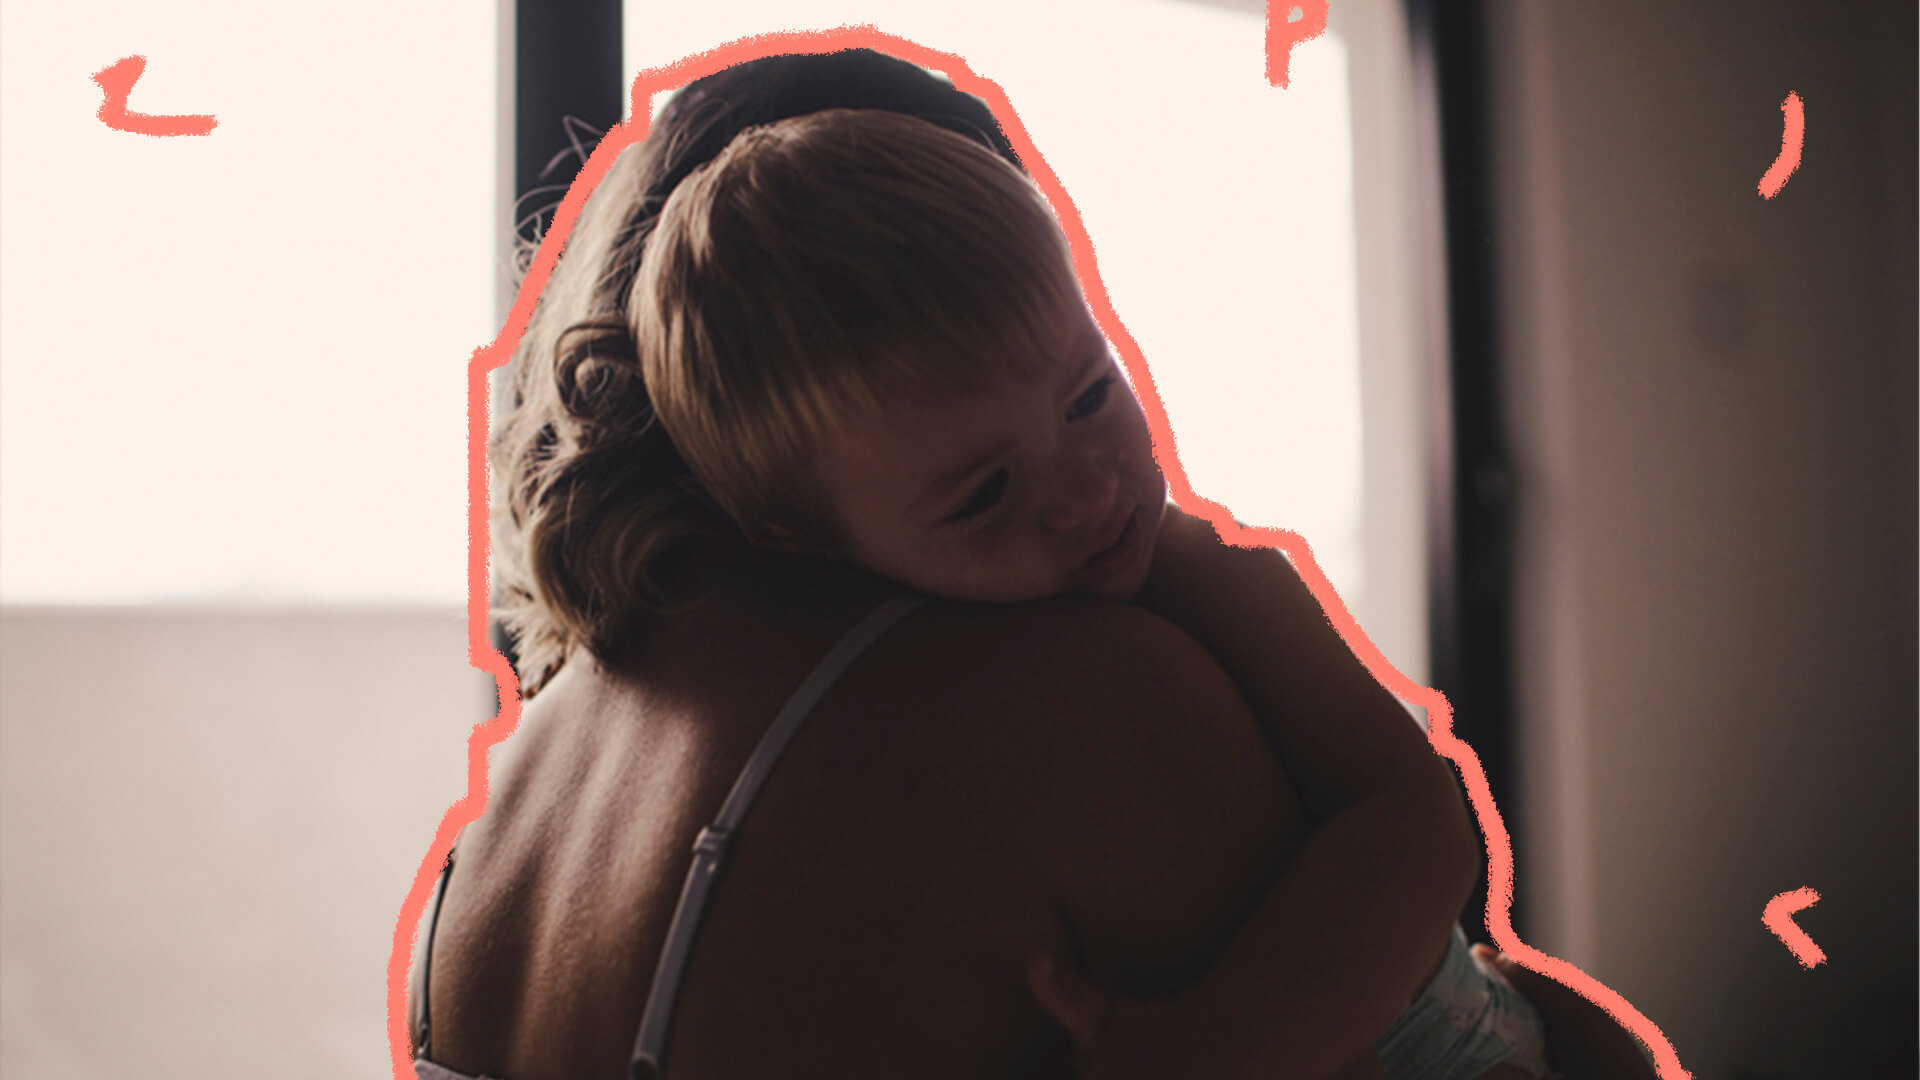 Em um abraço menino deita no ombro da mãe que o abraça, enquanto ele repousa o rosto em seu ombro.